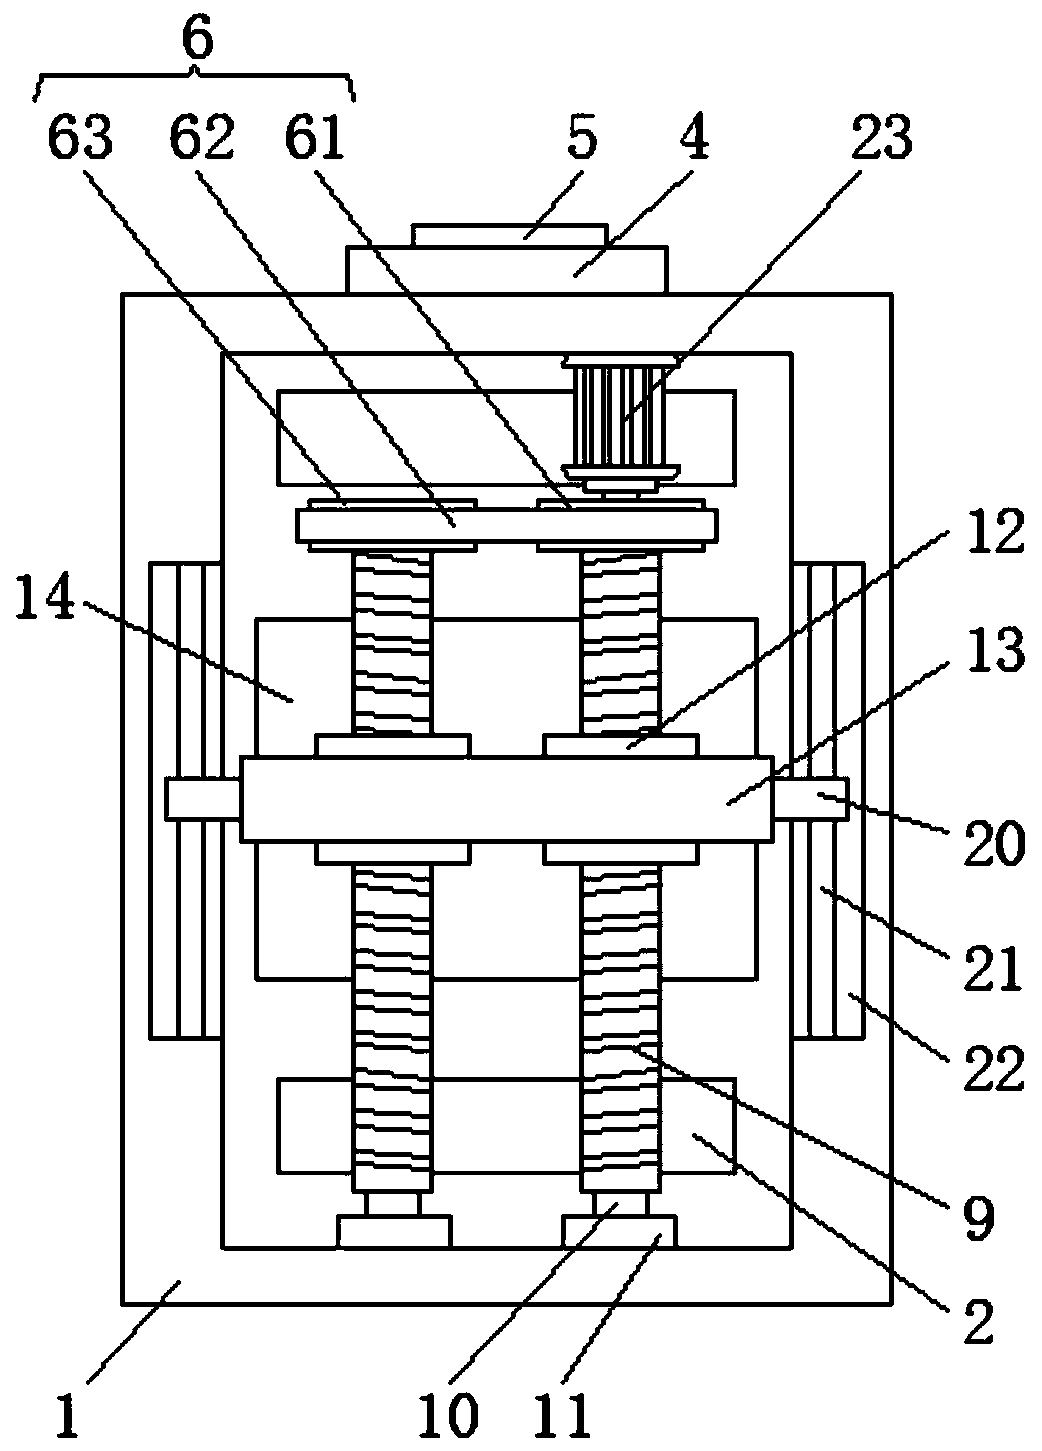 Voltage regulation device for motor